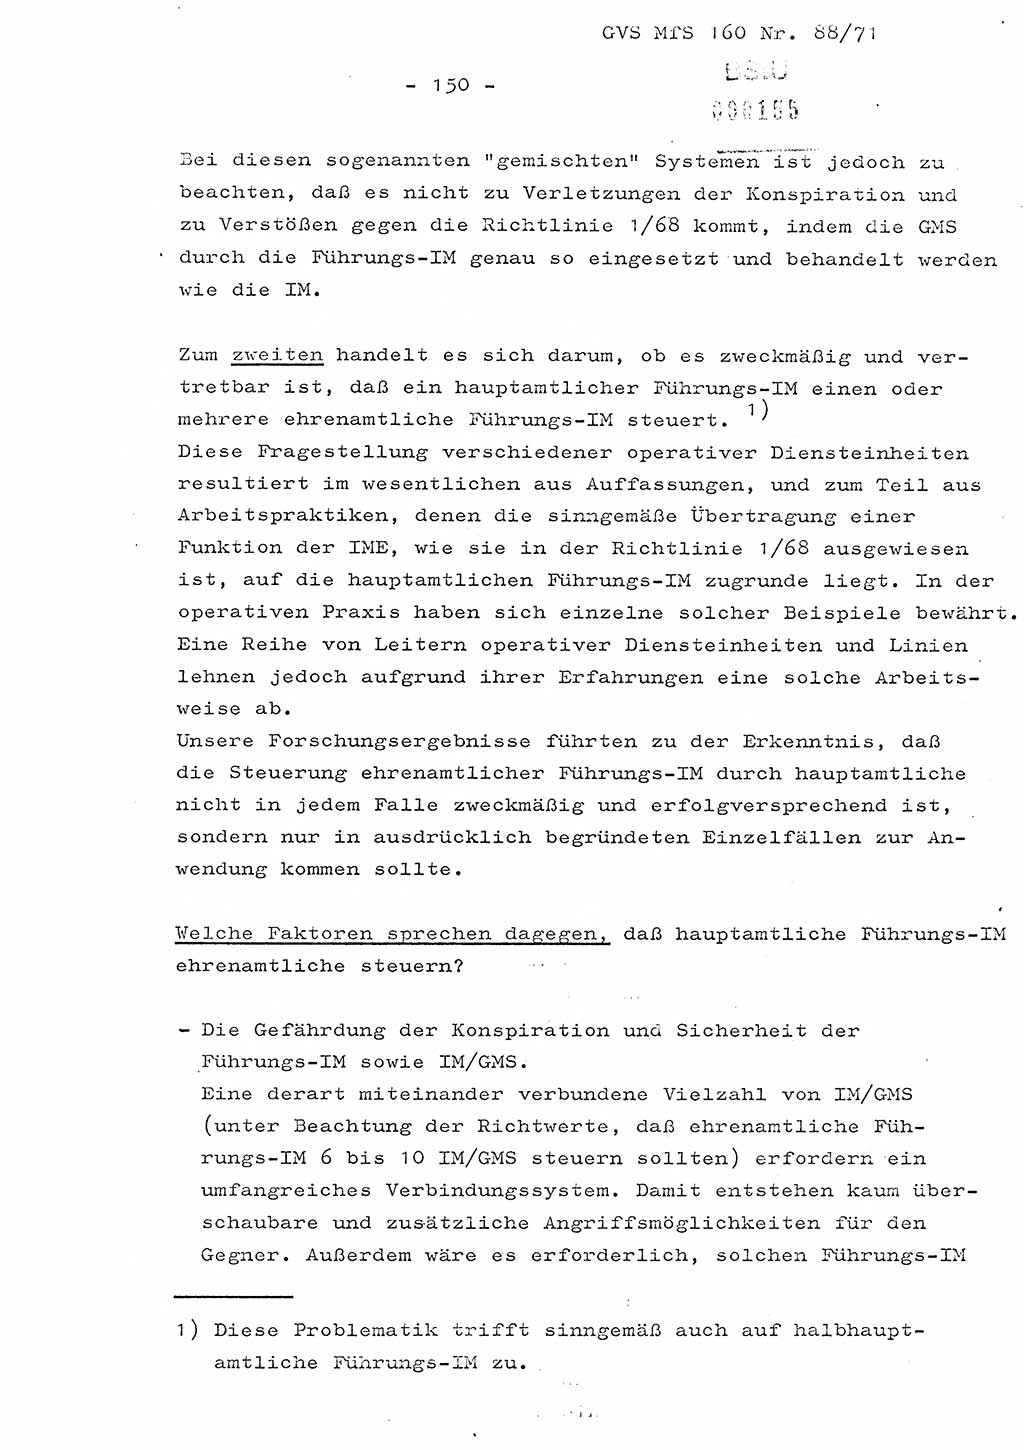 Dissertation Oberstleutnant Josef Schwarz (BV Schwerin), Major Fritz Amm (JHS), Hauptmann Peter Gräßler (JHS), Ministerium für Staatssicherheit (MfS) [Deutsche Demokratische Republik (DDR)], Juristische Hochschule (JHS), Geheime Verschlußsache (GVS) 160-88/71, Potsdam 1972, Seite 150 (Diss. MfS DDR JHS GVS 160-88/71 1972, S. 150)